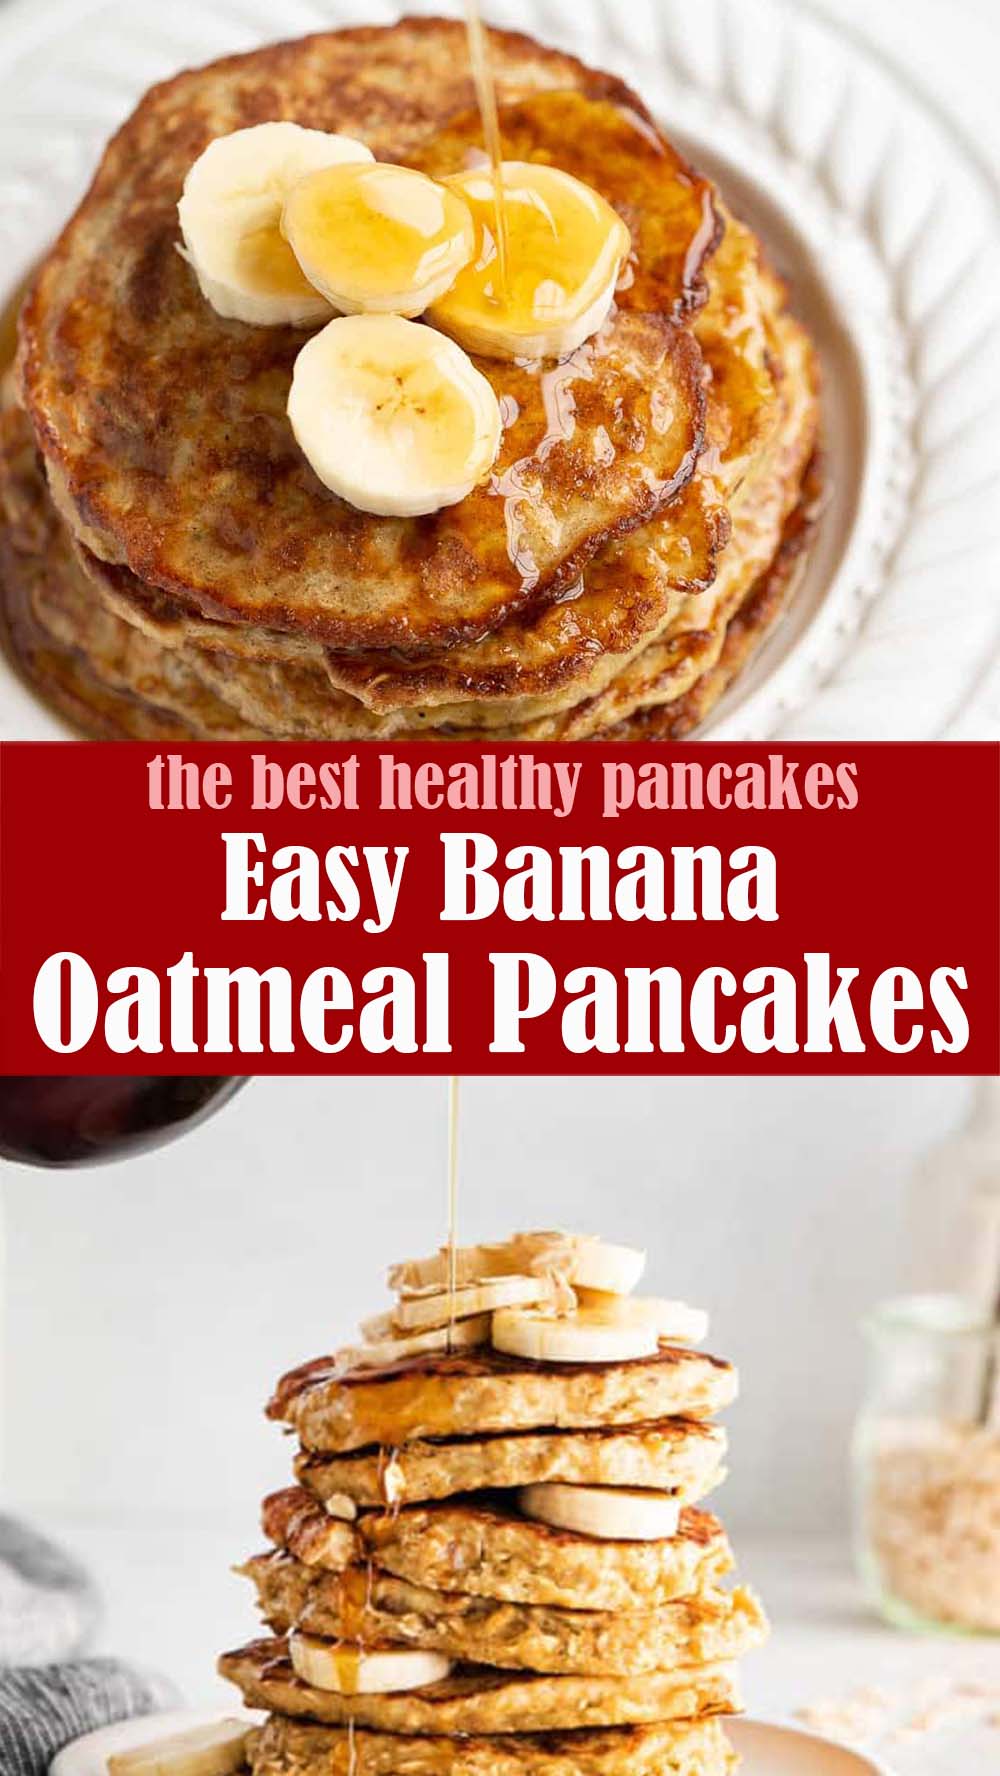 Easy Banana Oatmeal Pancakes